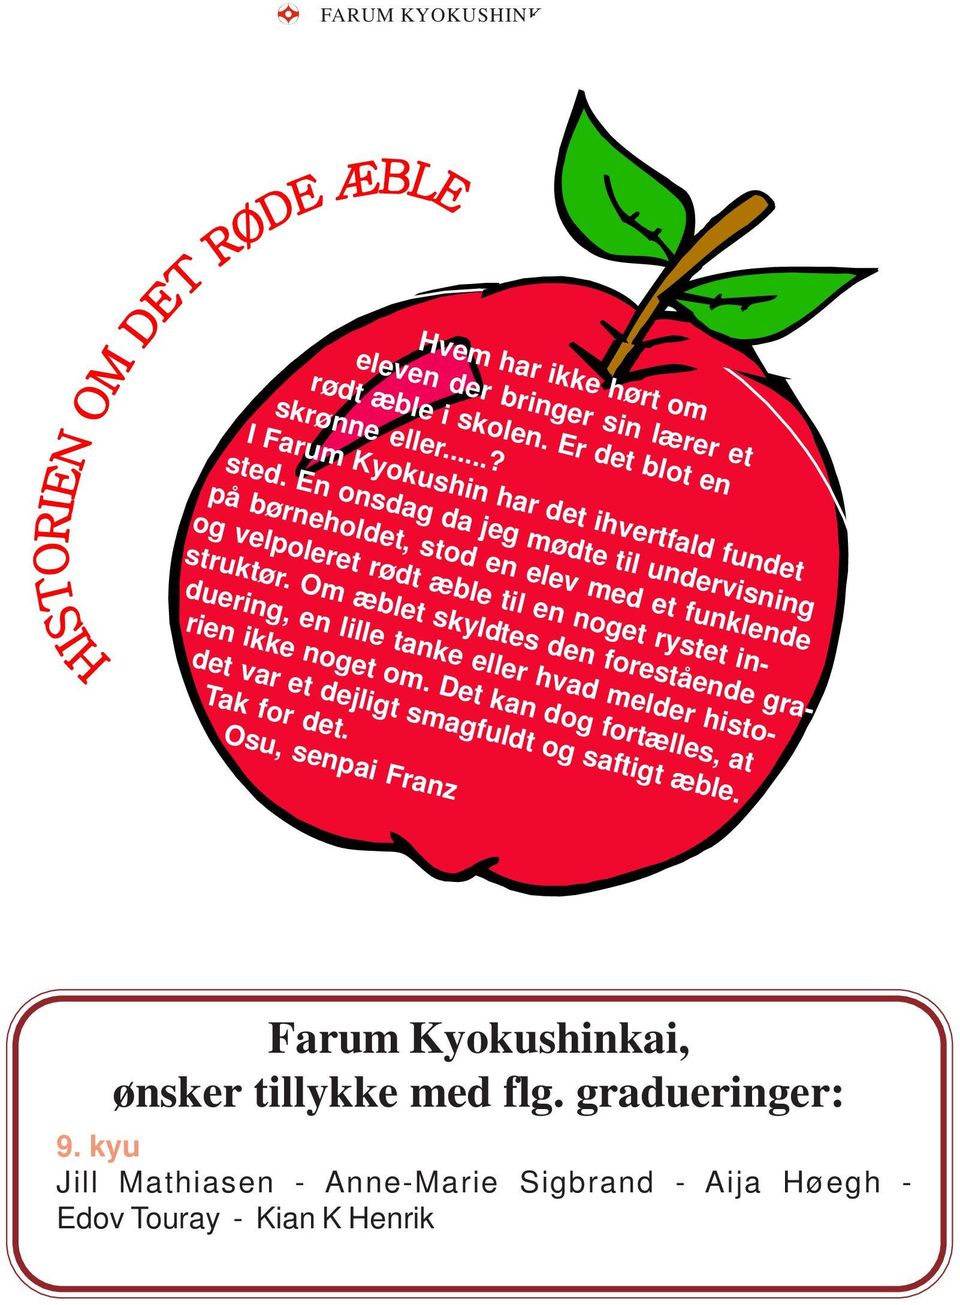 En onsdag da jeg mødte til undervisning på børneholdet, stod en elev med et funklende og velpoleret rødt æble til en noget rystet instruktør.